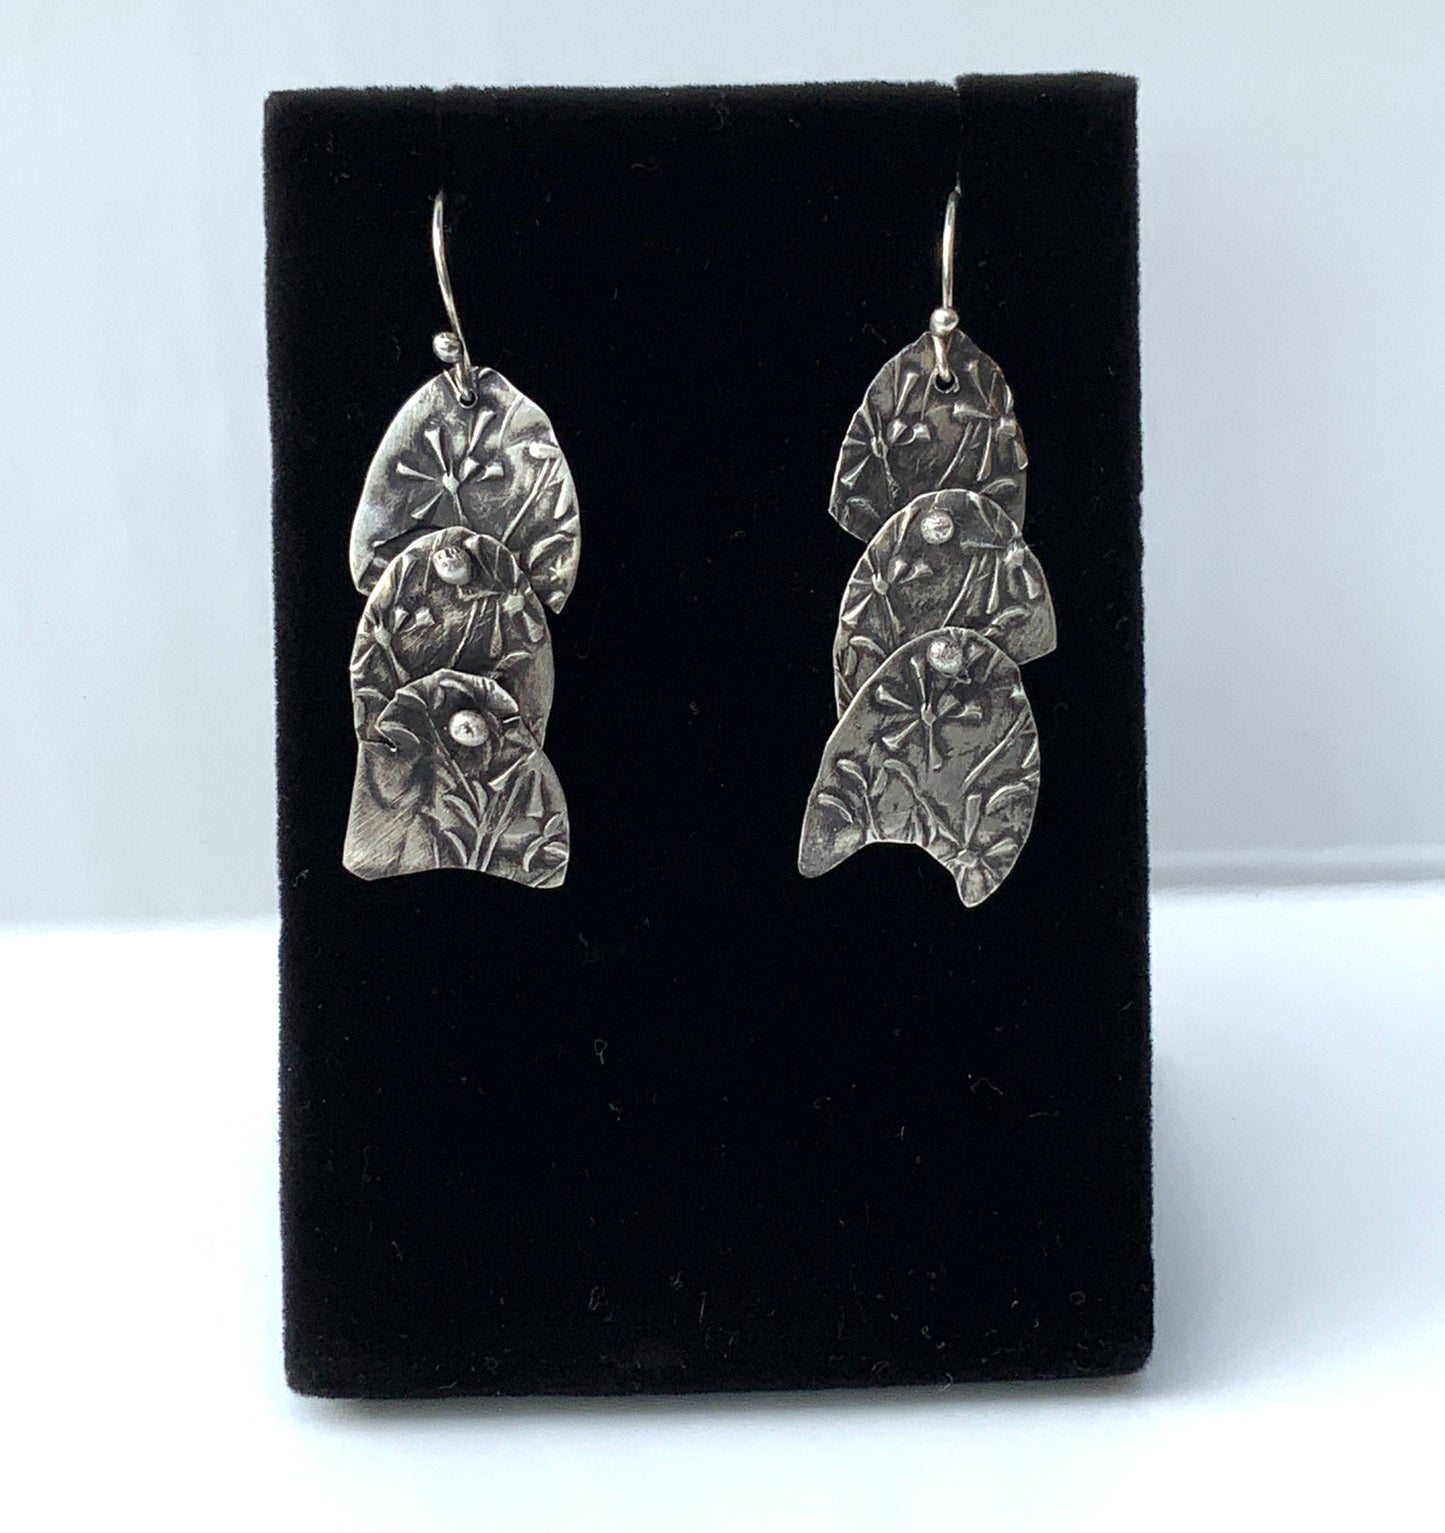 Aster Wildflower Silver Earrings - Evitts Creek Arts